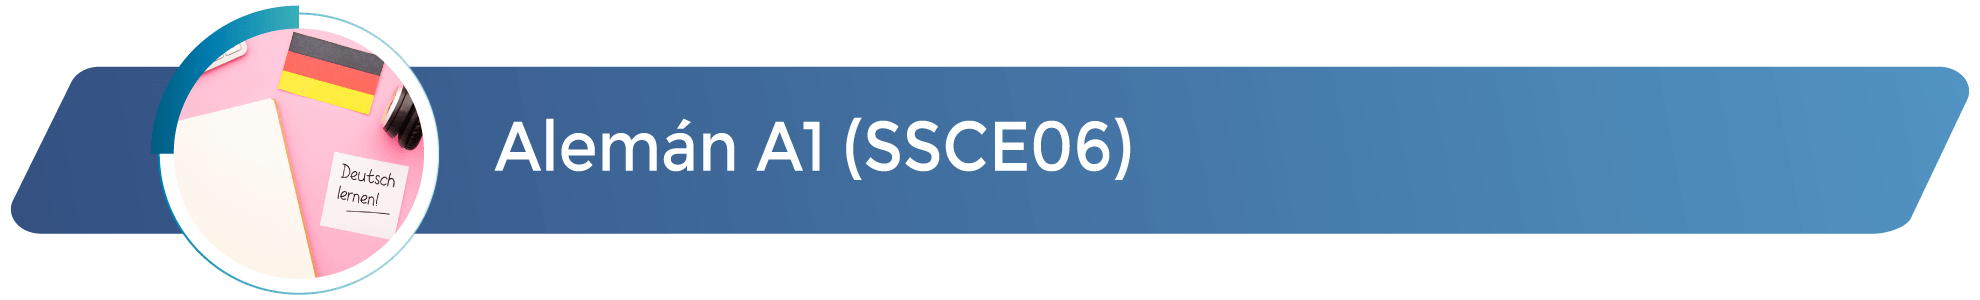 SSCE06 - Alemán A1